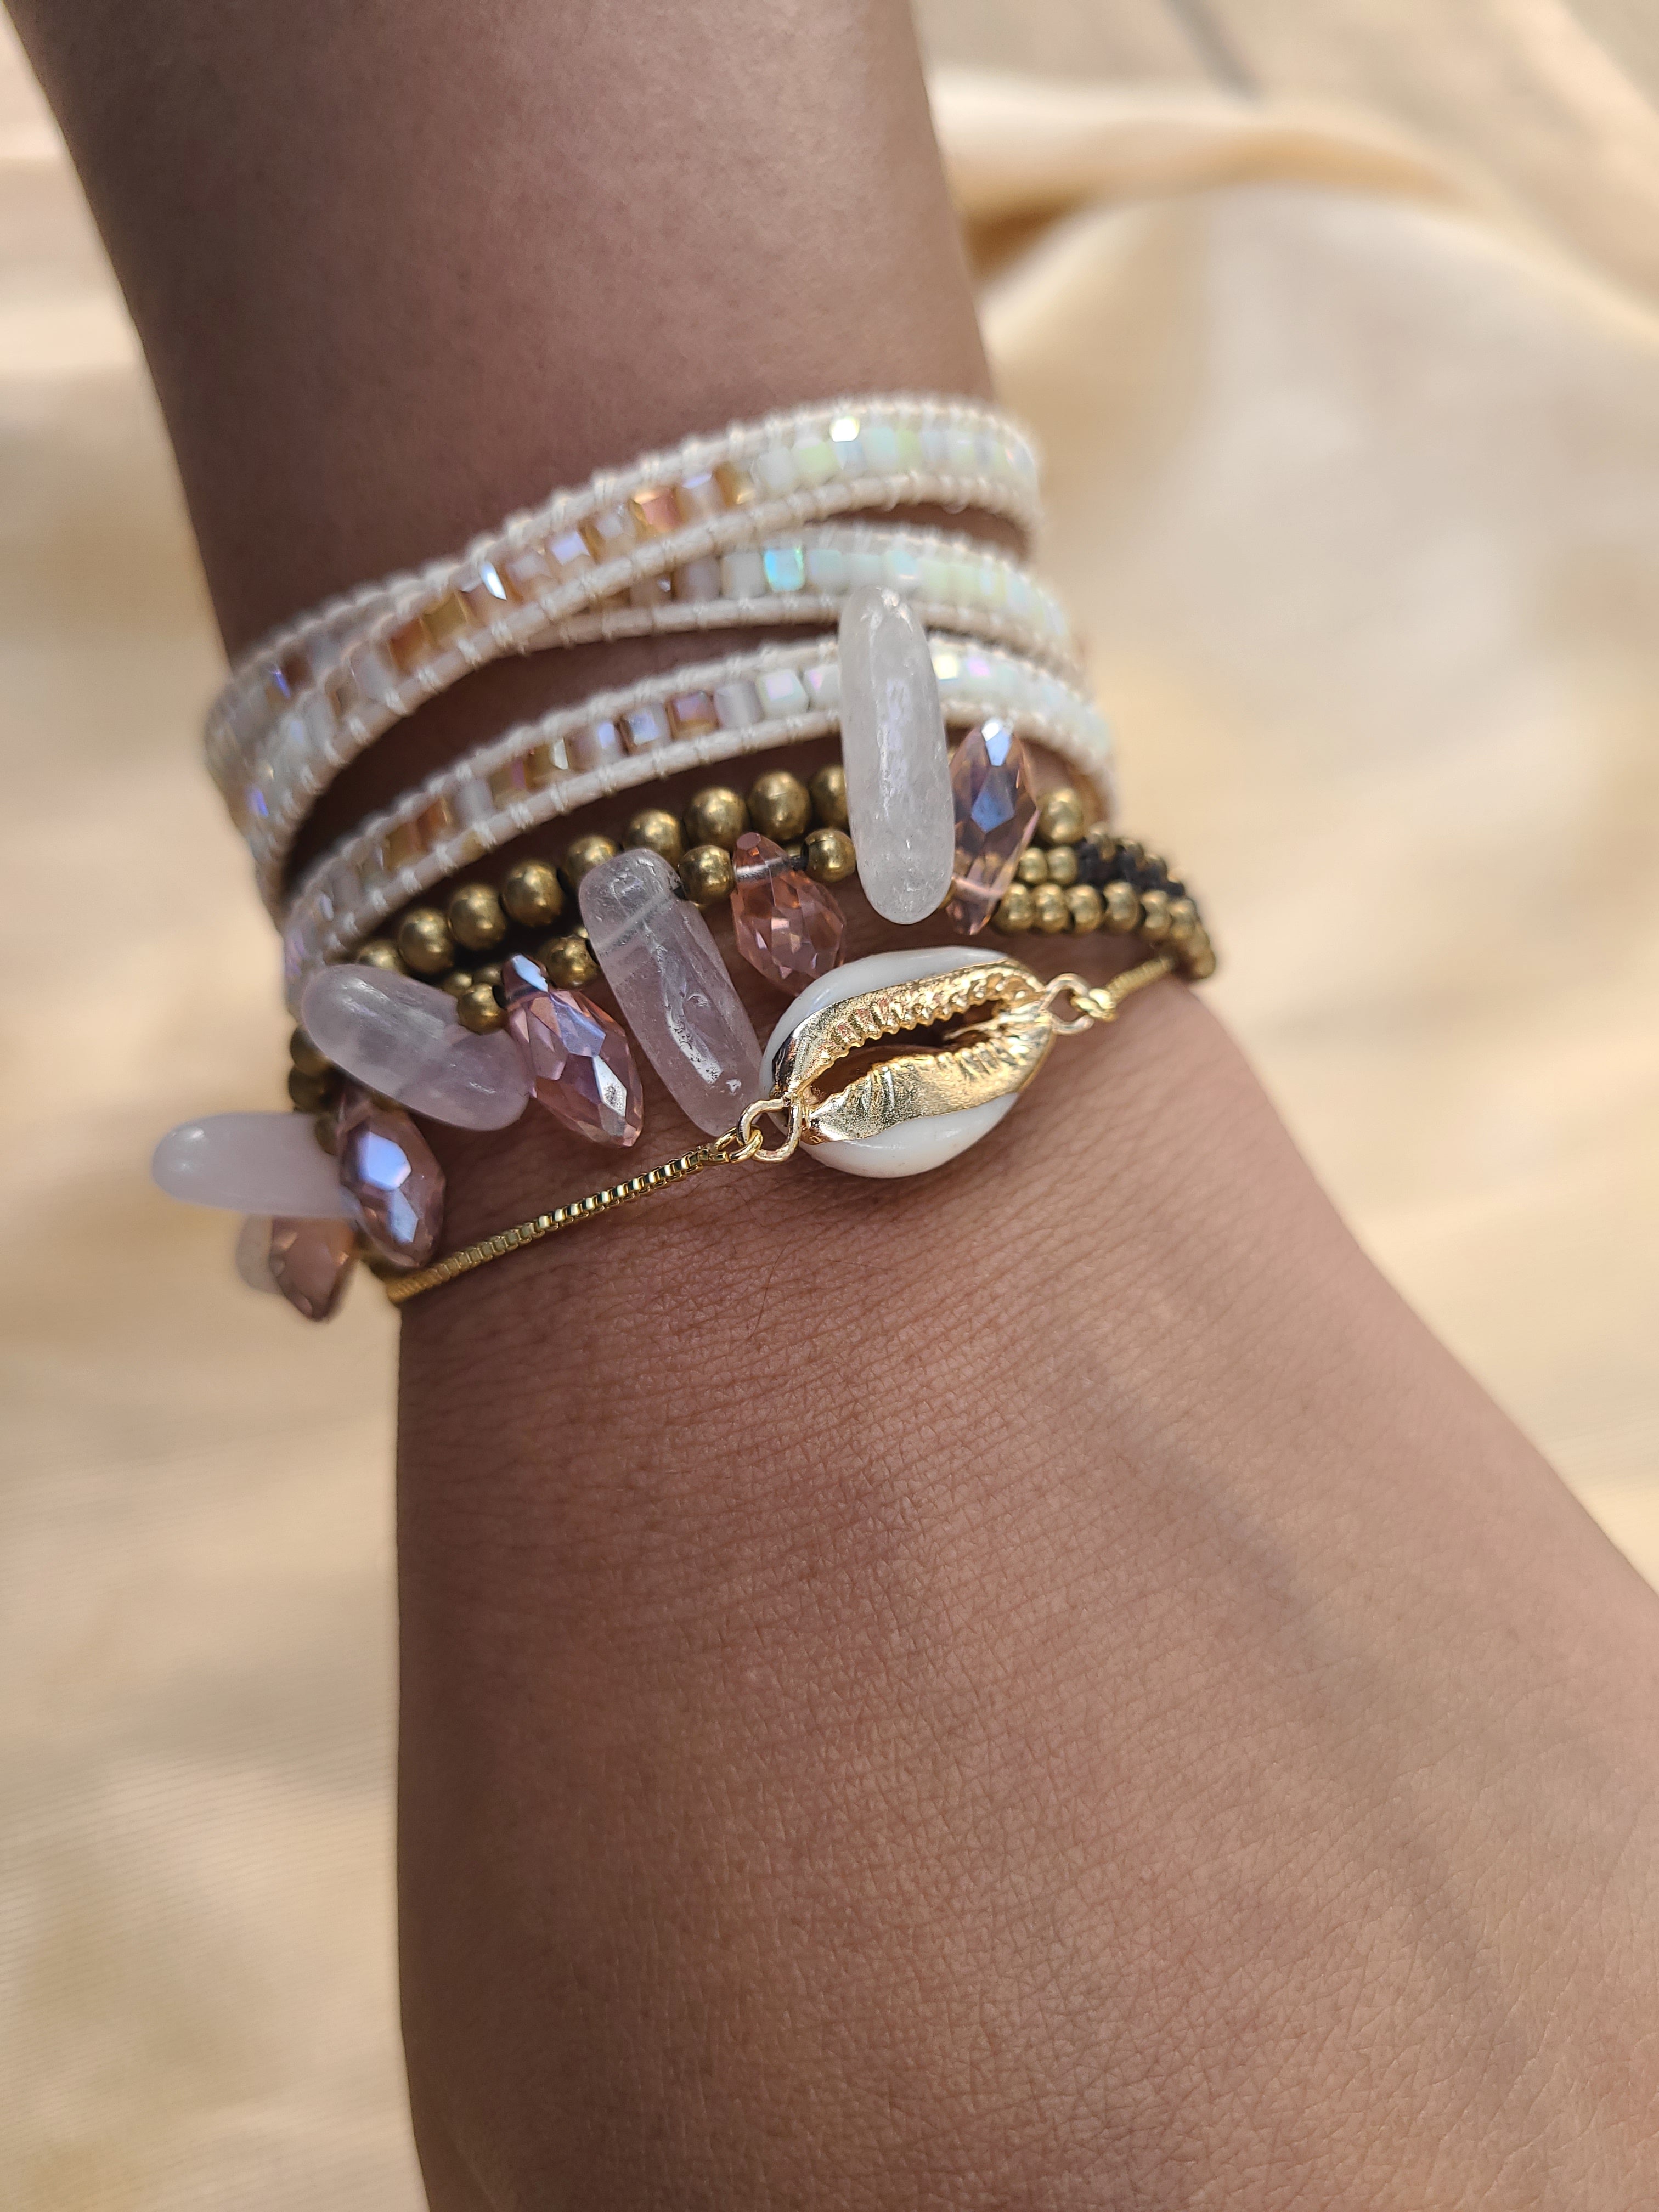 Olivia bracelets